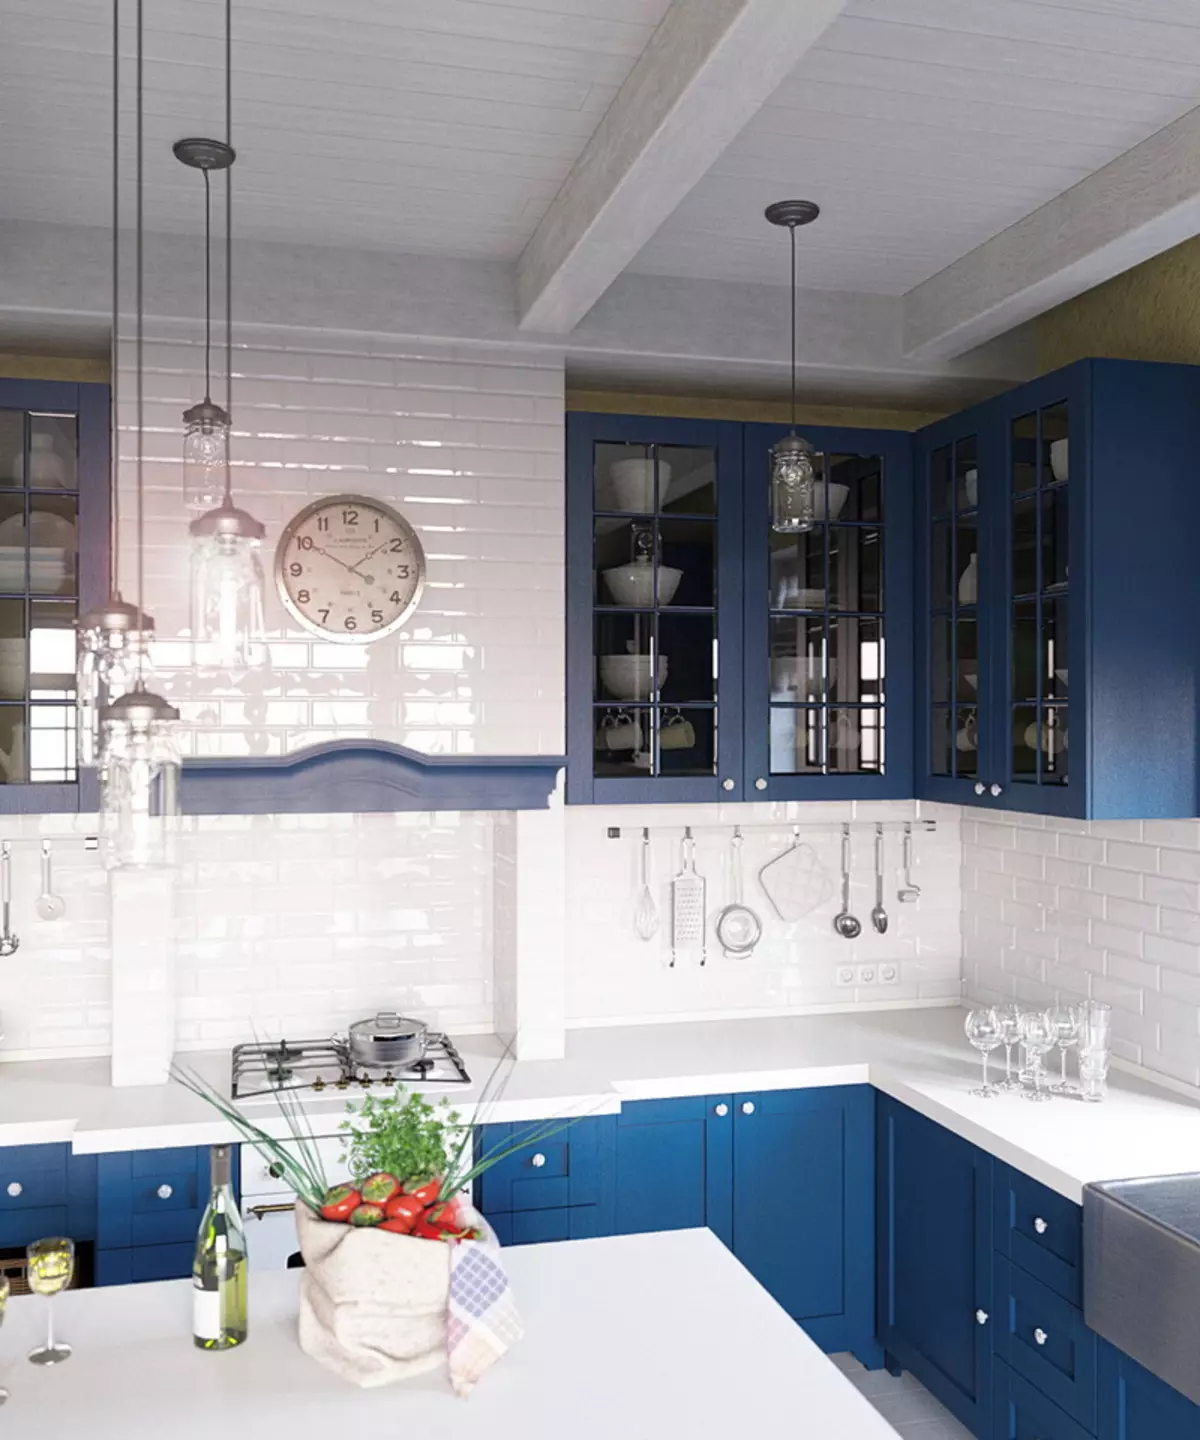 Cucina bianca-blu (64 foto): Caratteristiche dell'auricolare della cucina in colore bianco-blu per la cucina Interior design, accenti sulle pareti in colori simili 9393_26